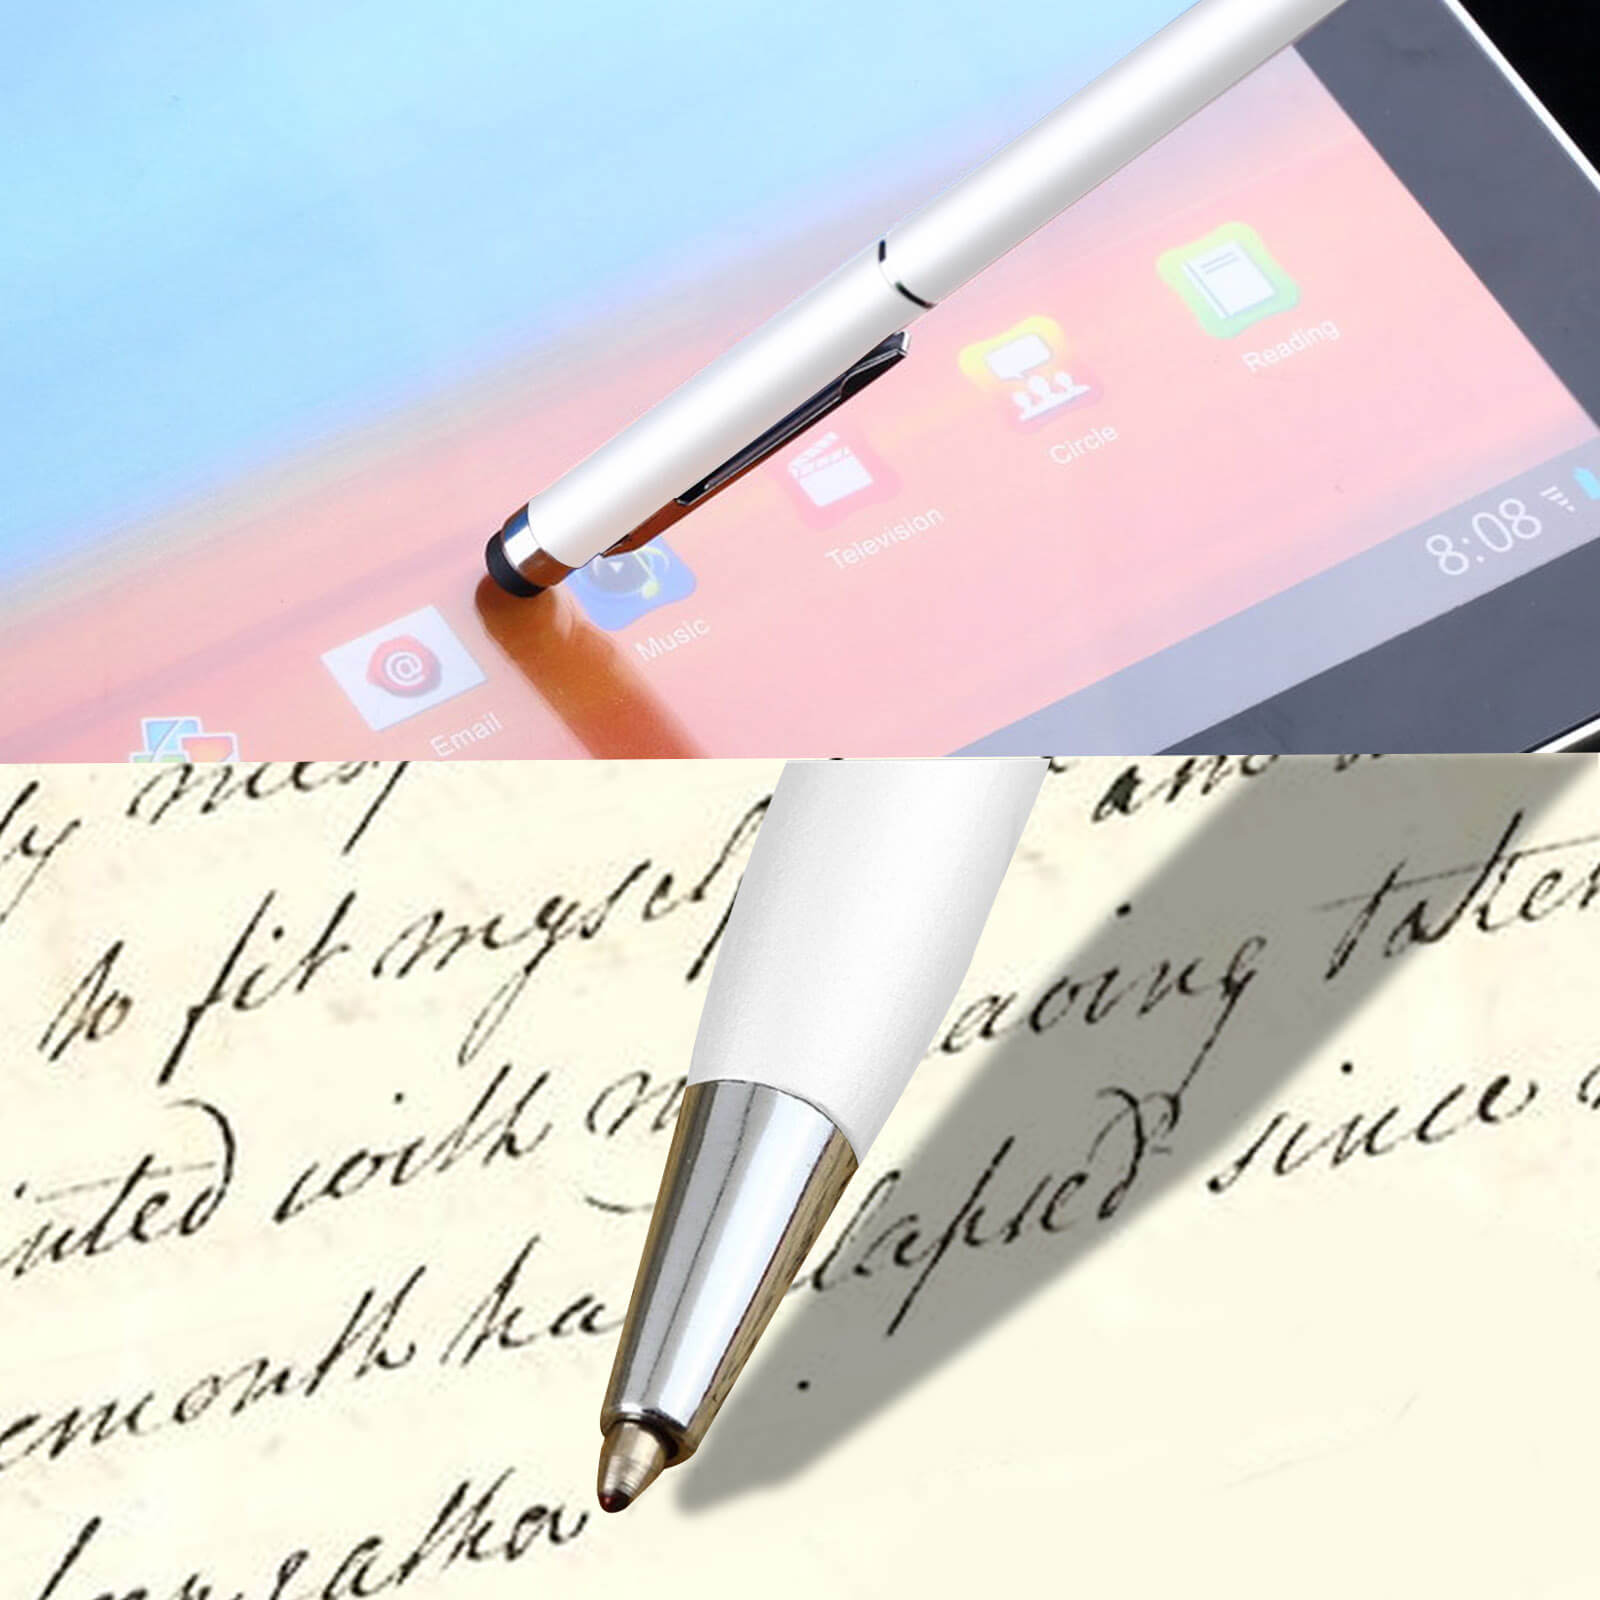 Penna touch screen 2 in 1 e Penna a Sfera - bianco per Tablet, Smartphone -  Italiano